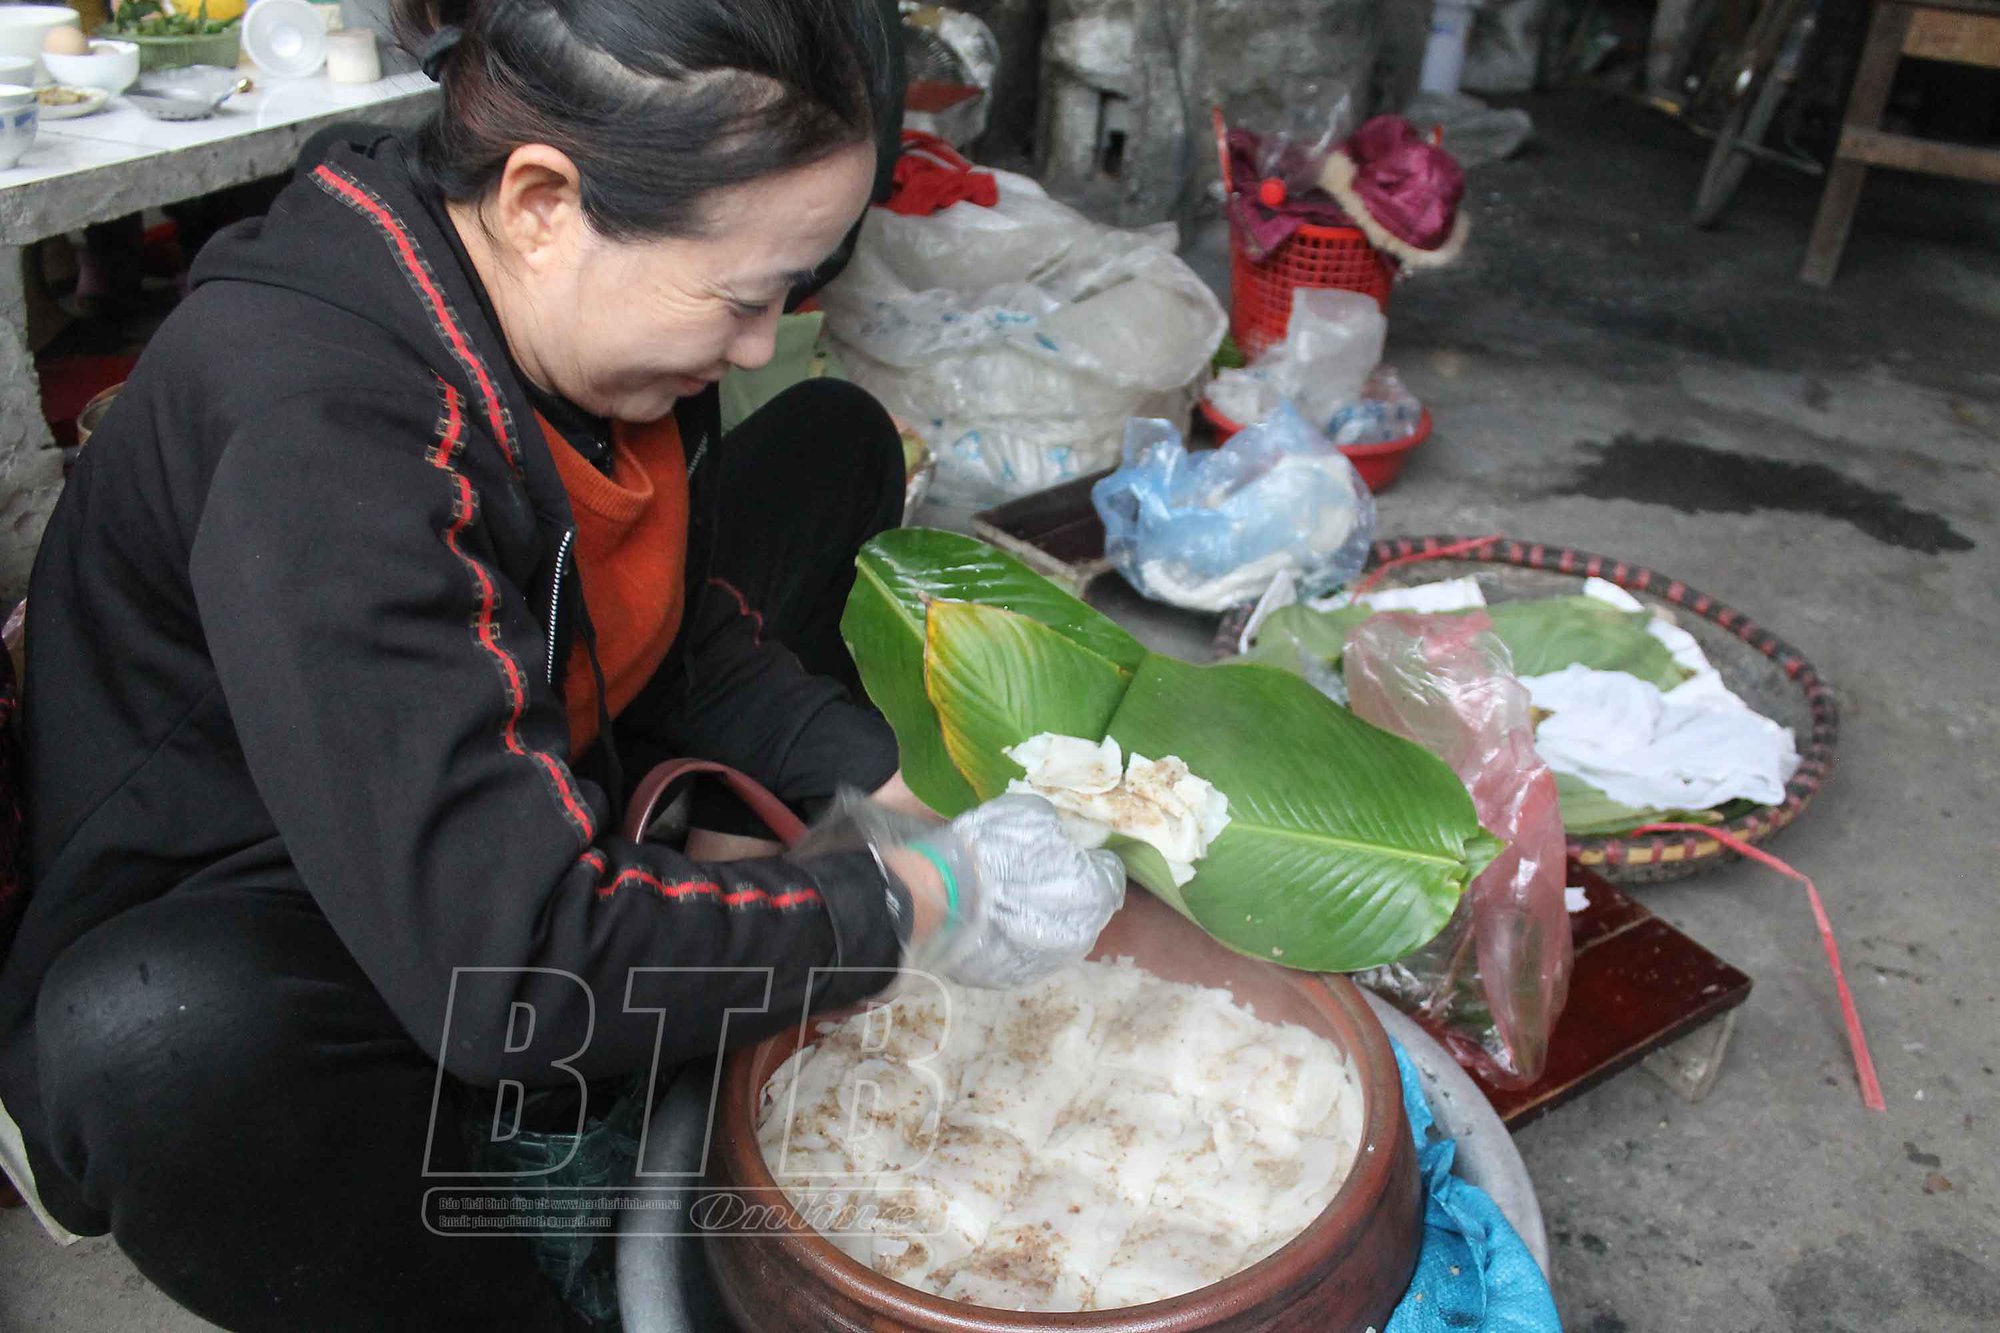 Chợ làng nổi tiếng đất Thái Bình, đi ngang qua thơm nức mùi bánh quê, chợt thèm cồn cào, vào ăn càng thèm hơn - Ảnh 3.